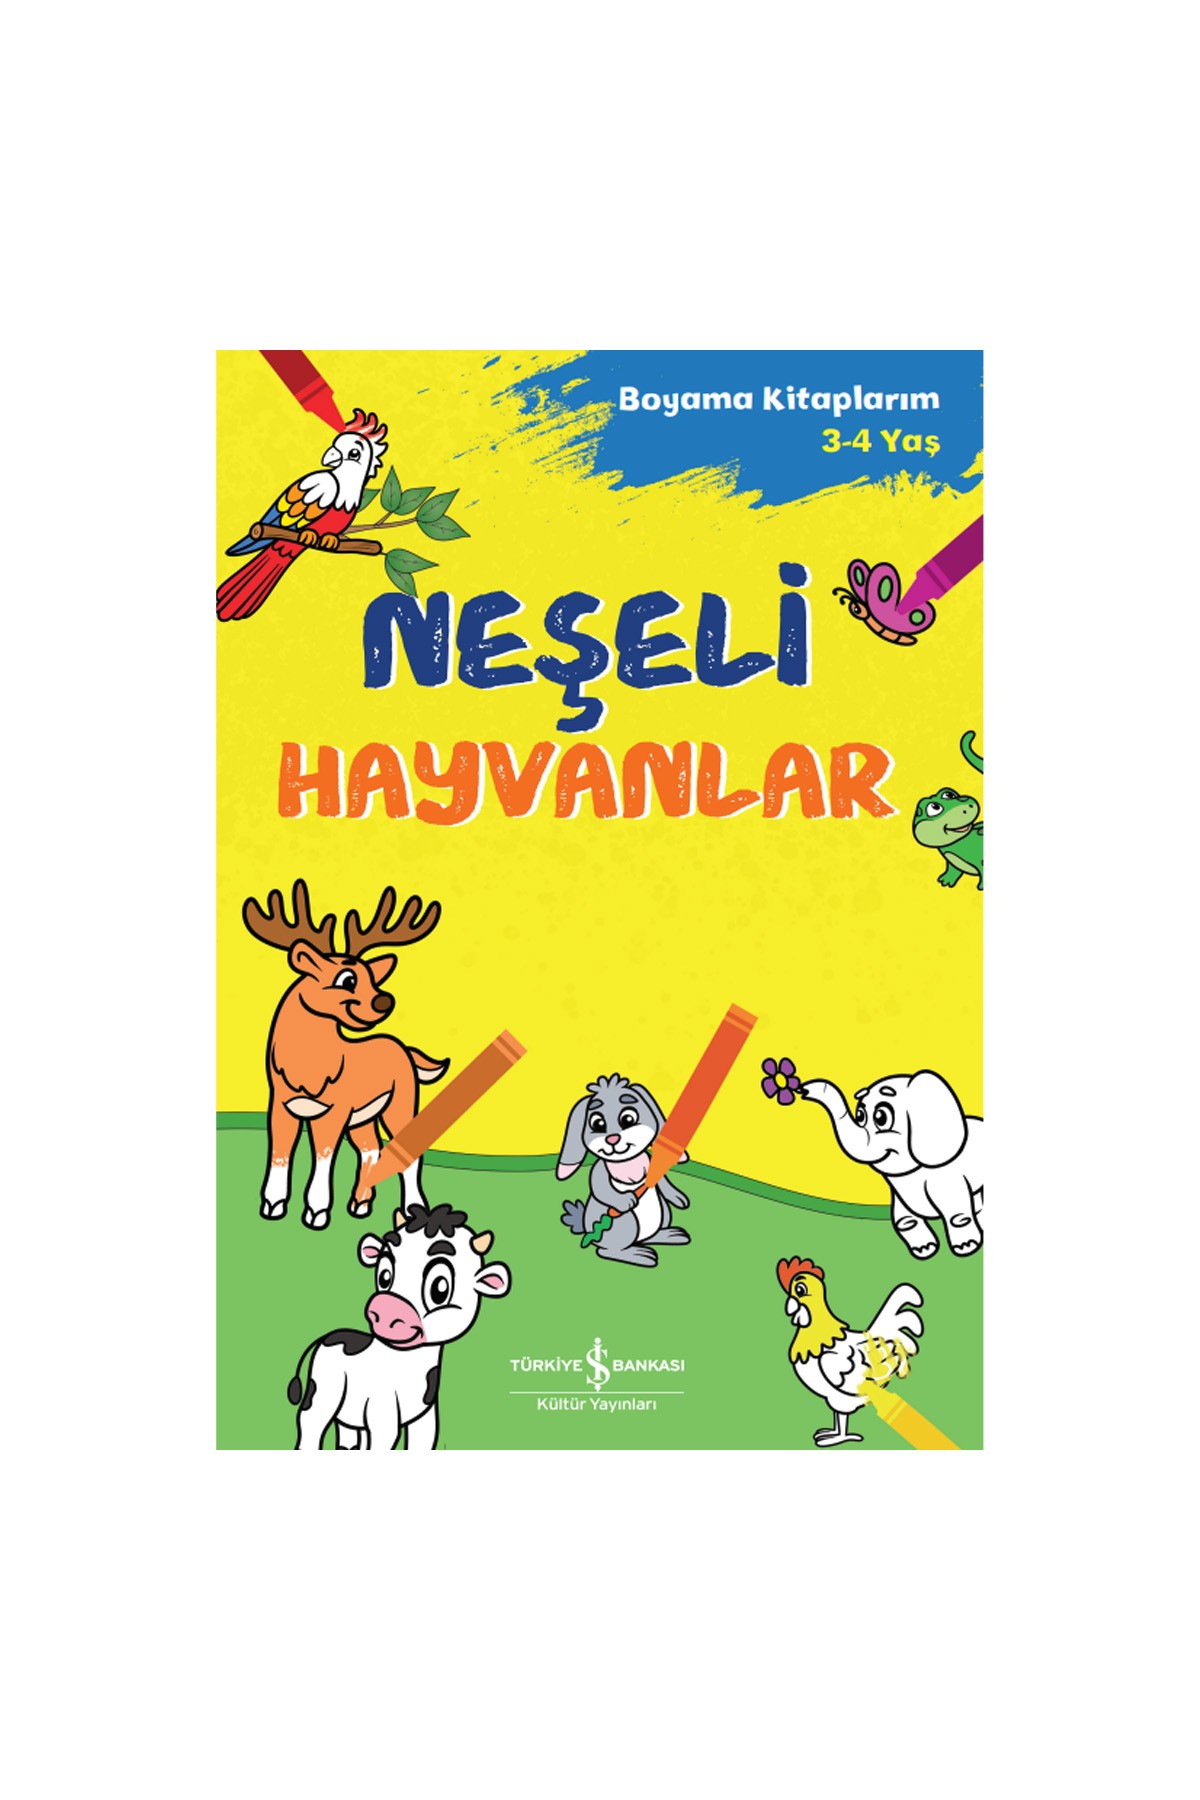 Türkiye İş Bankası Kültür Yayınları Neşeli Hayvanlar – Boyama Kitaplarım 3-4 Yaş